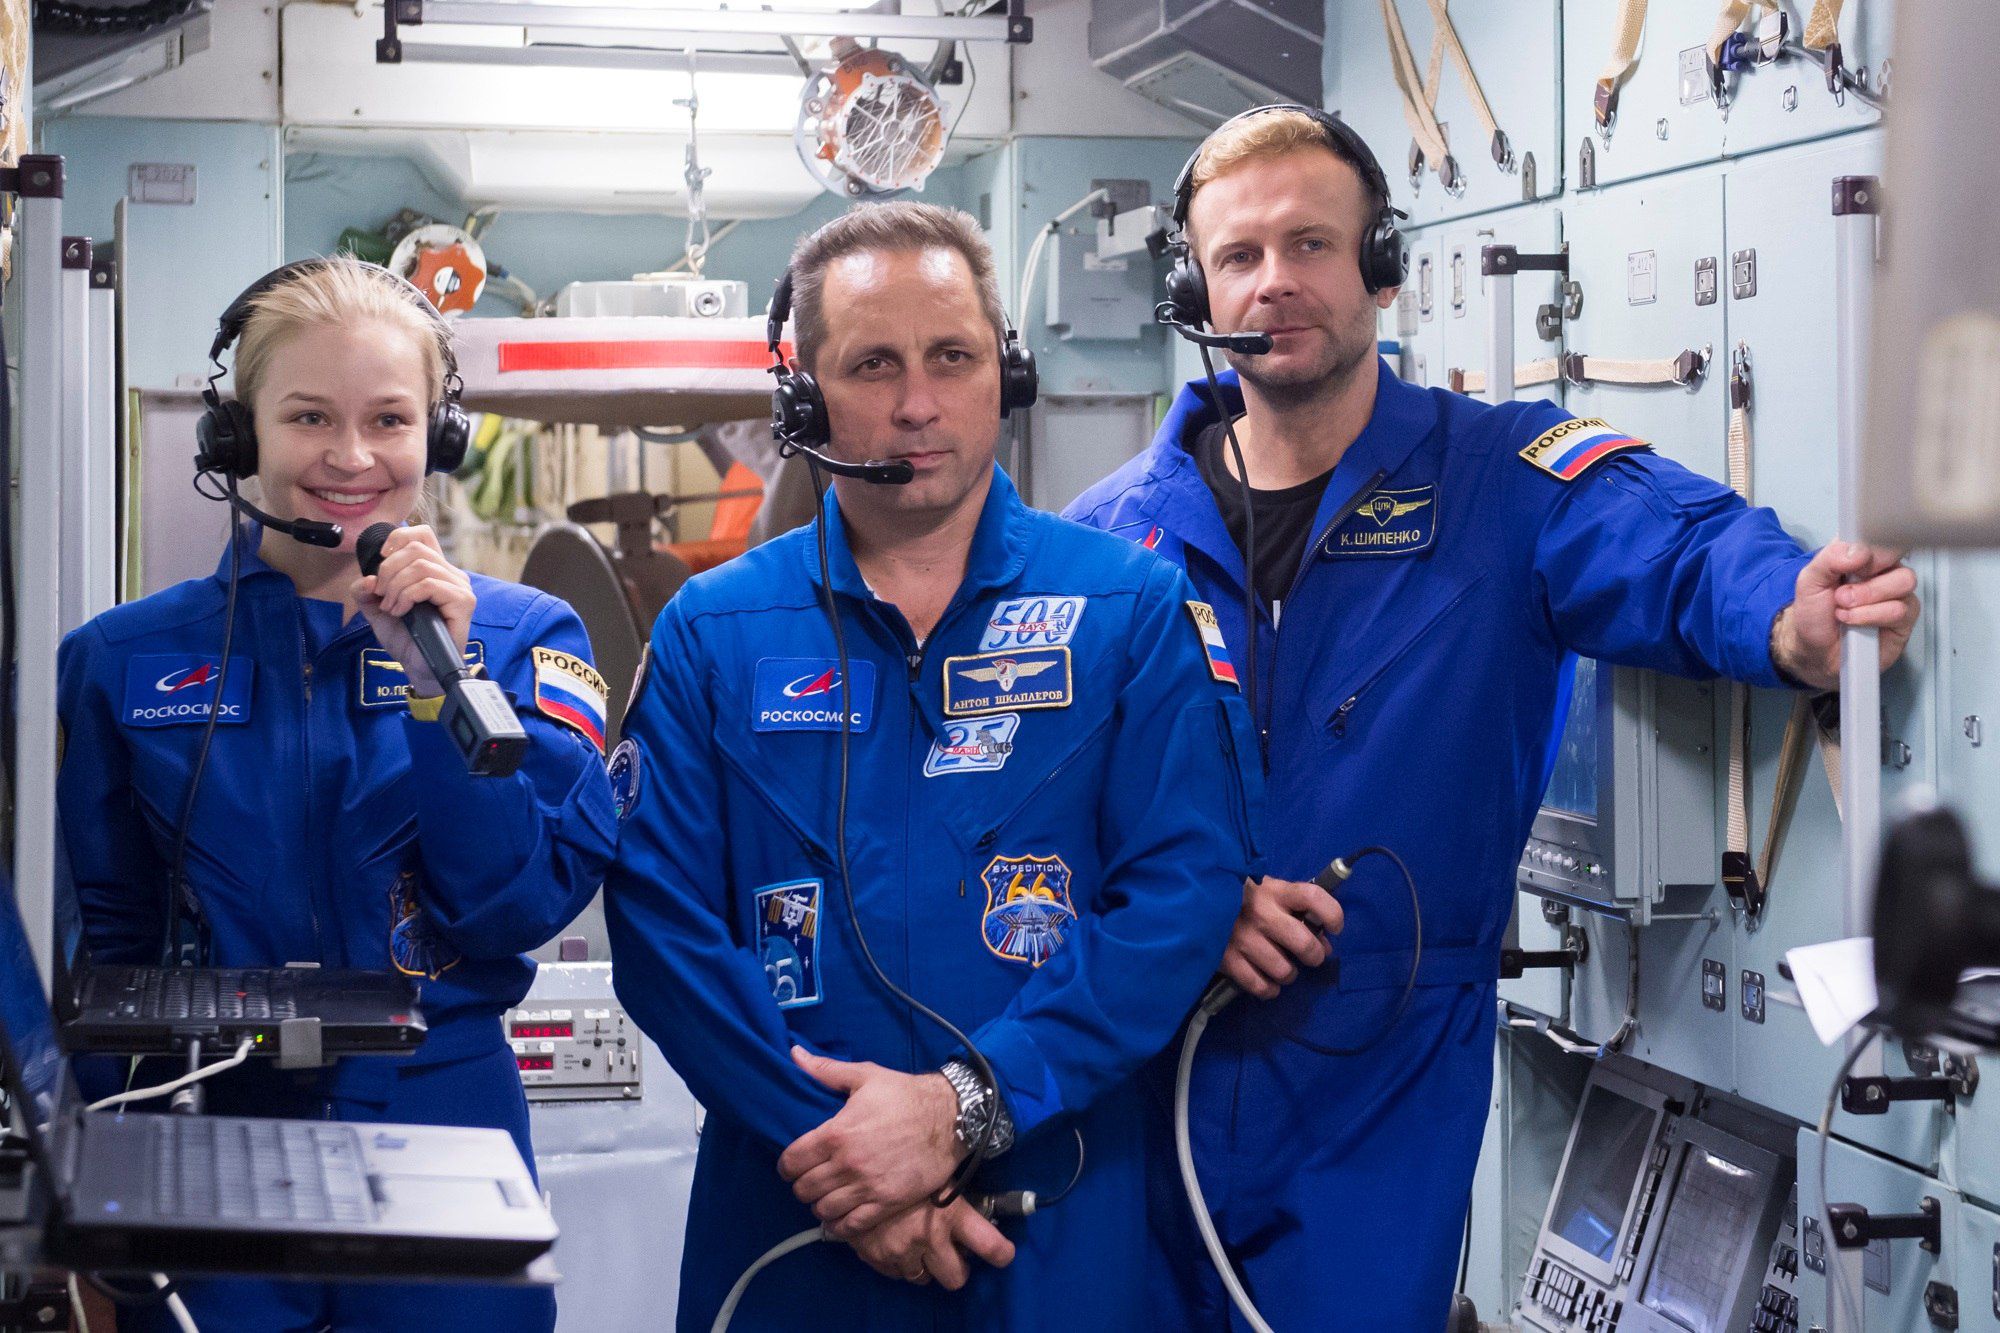 Peresild, o astronauta Anton Shkaplerov e o cineasta Klim Shipenko no seu último treinamentono Centro de Preparação de Astronautas, em 8 de setembro